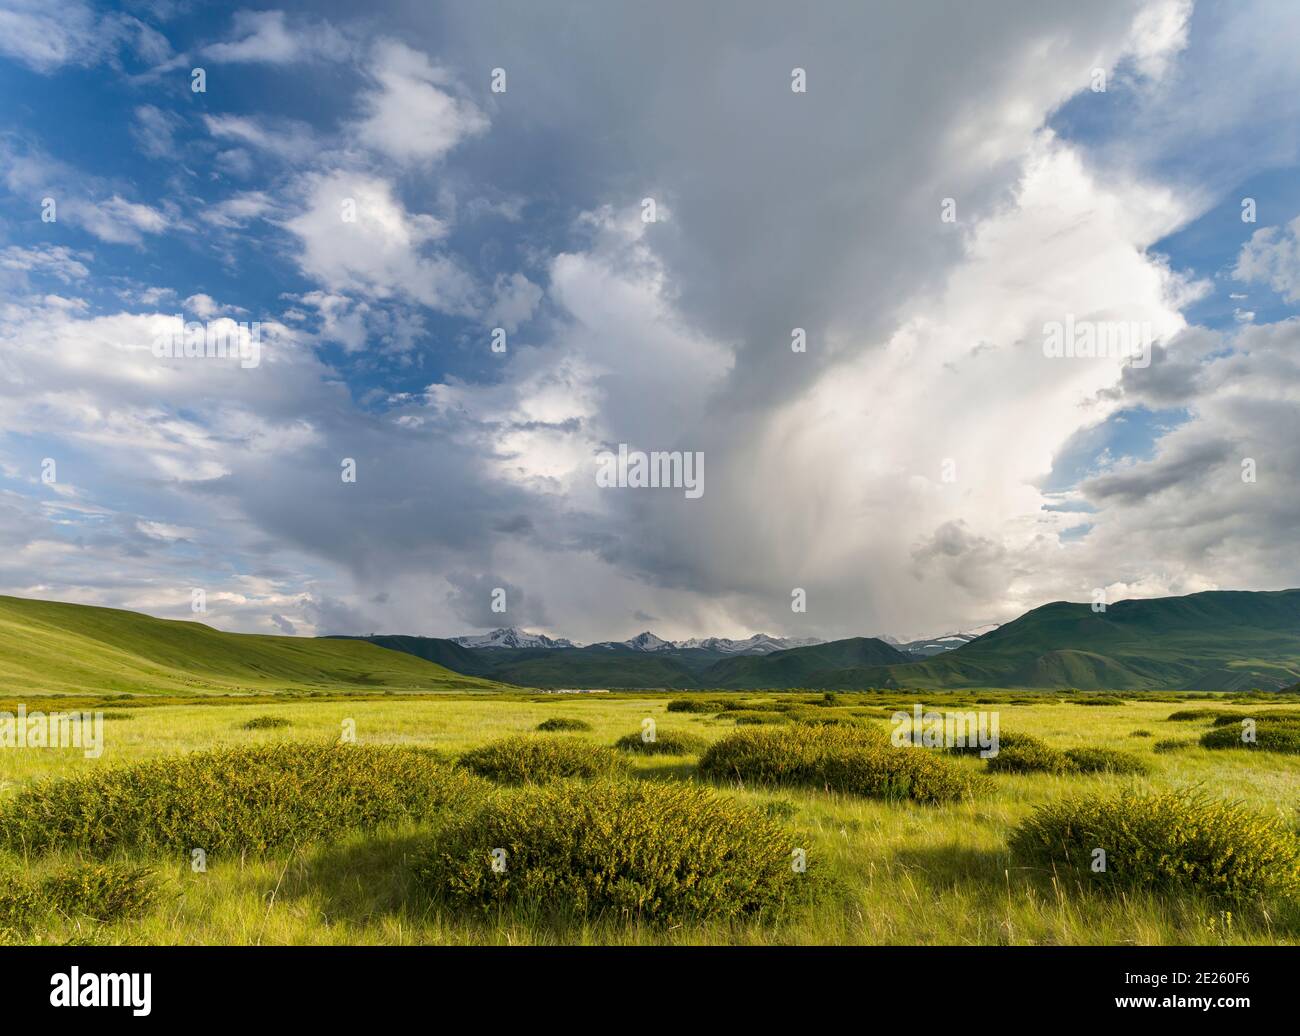 Ein Gewitter entwickelt sich. Die Suusamyr Ebene, ein Hochtal in den Tien Shan Bergen. Asien, Zentralasien, Kirgisistan Stockfoto